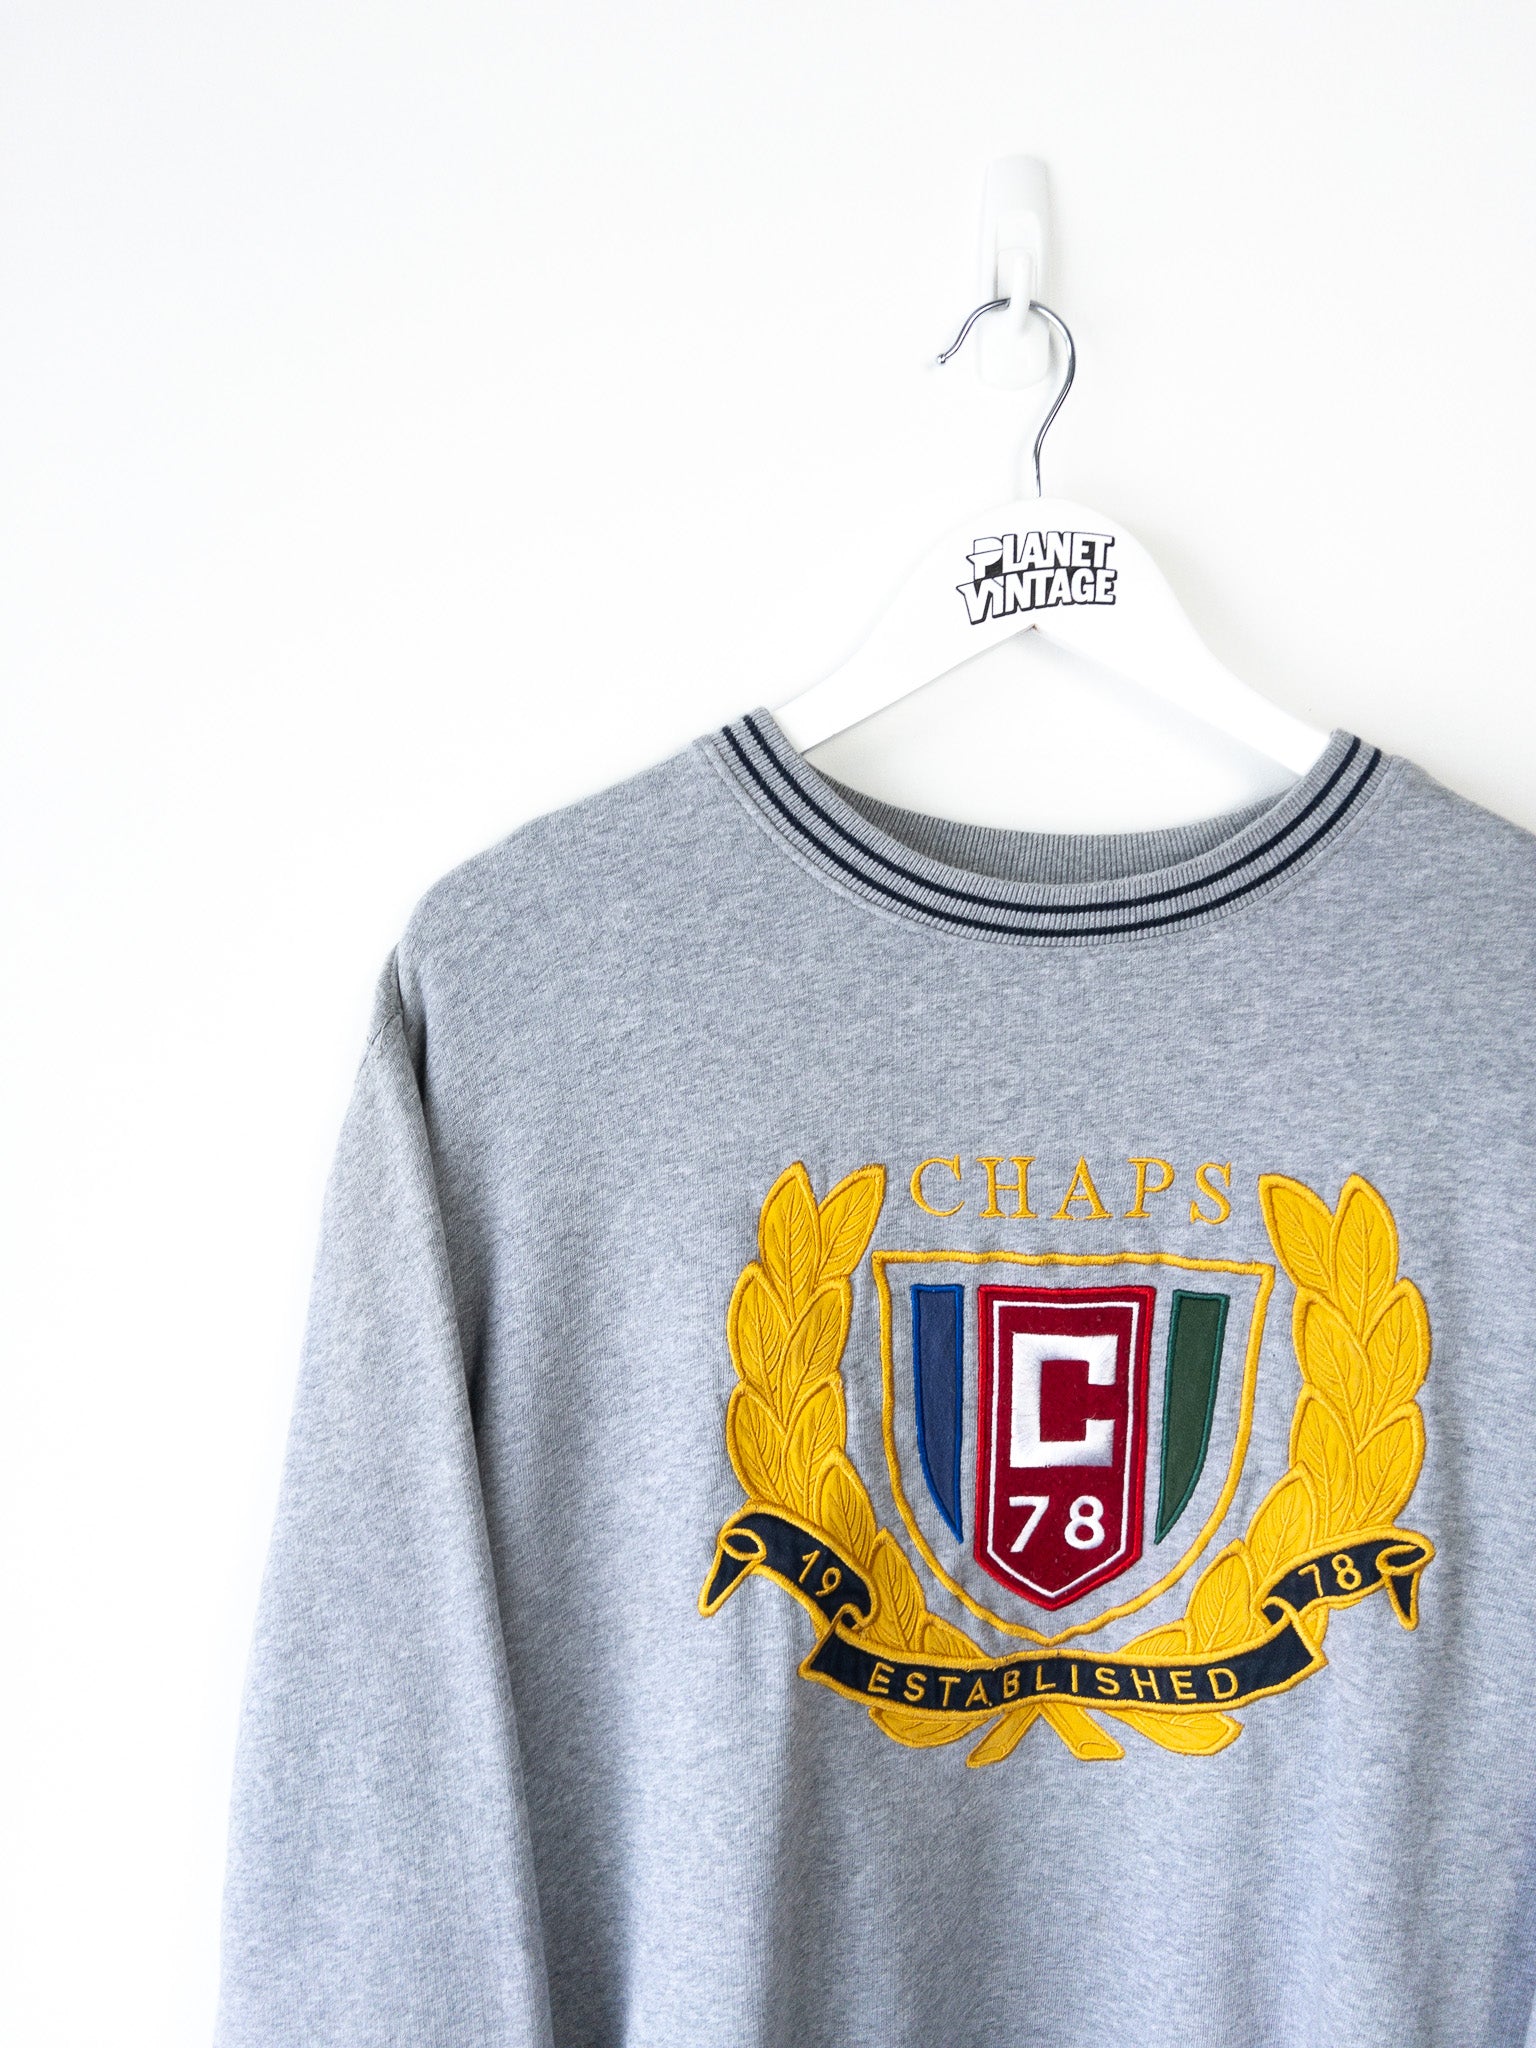 Vintage Chaps Ralph Lauren Sweatshirt (L)